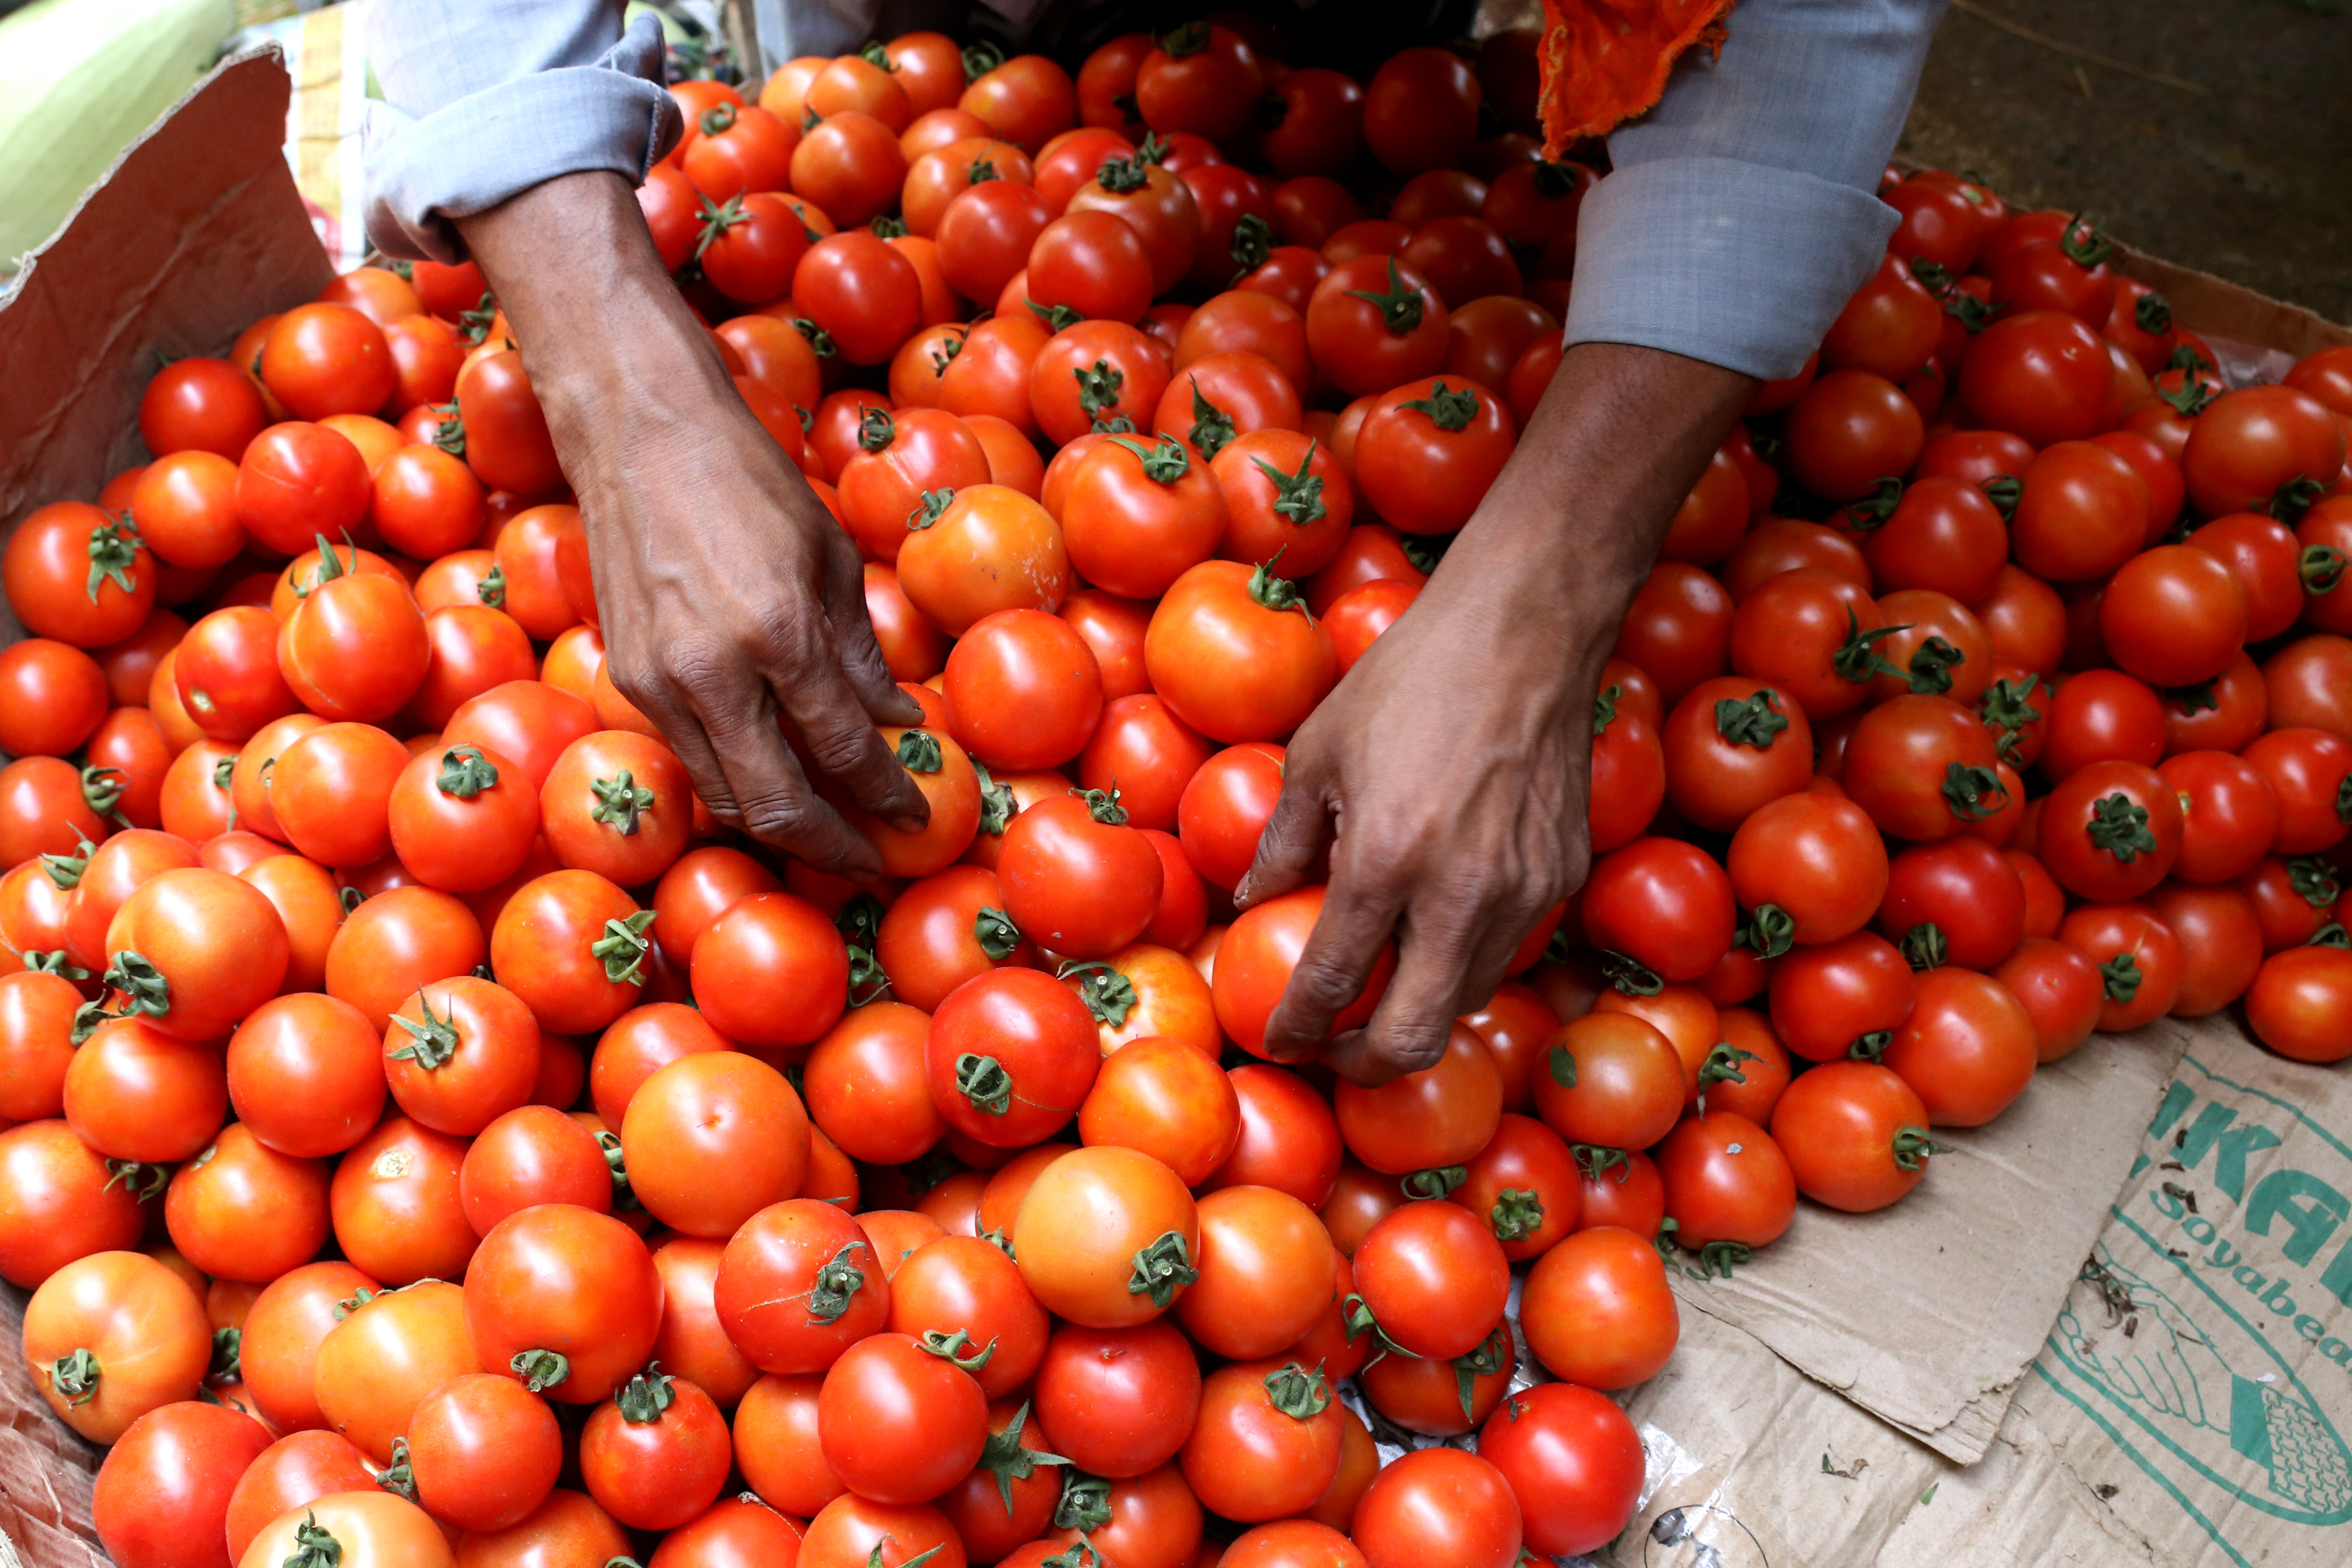 De tomatenprijzen in India zijn met meer dan 300% gestegen, wat leidt tot dieven en onrust